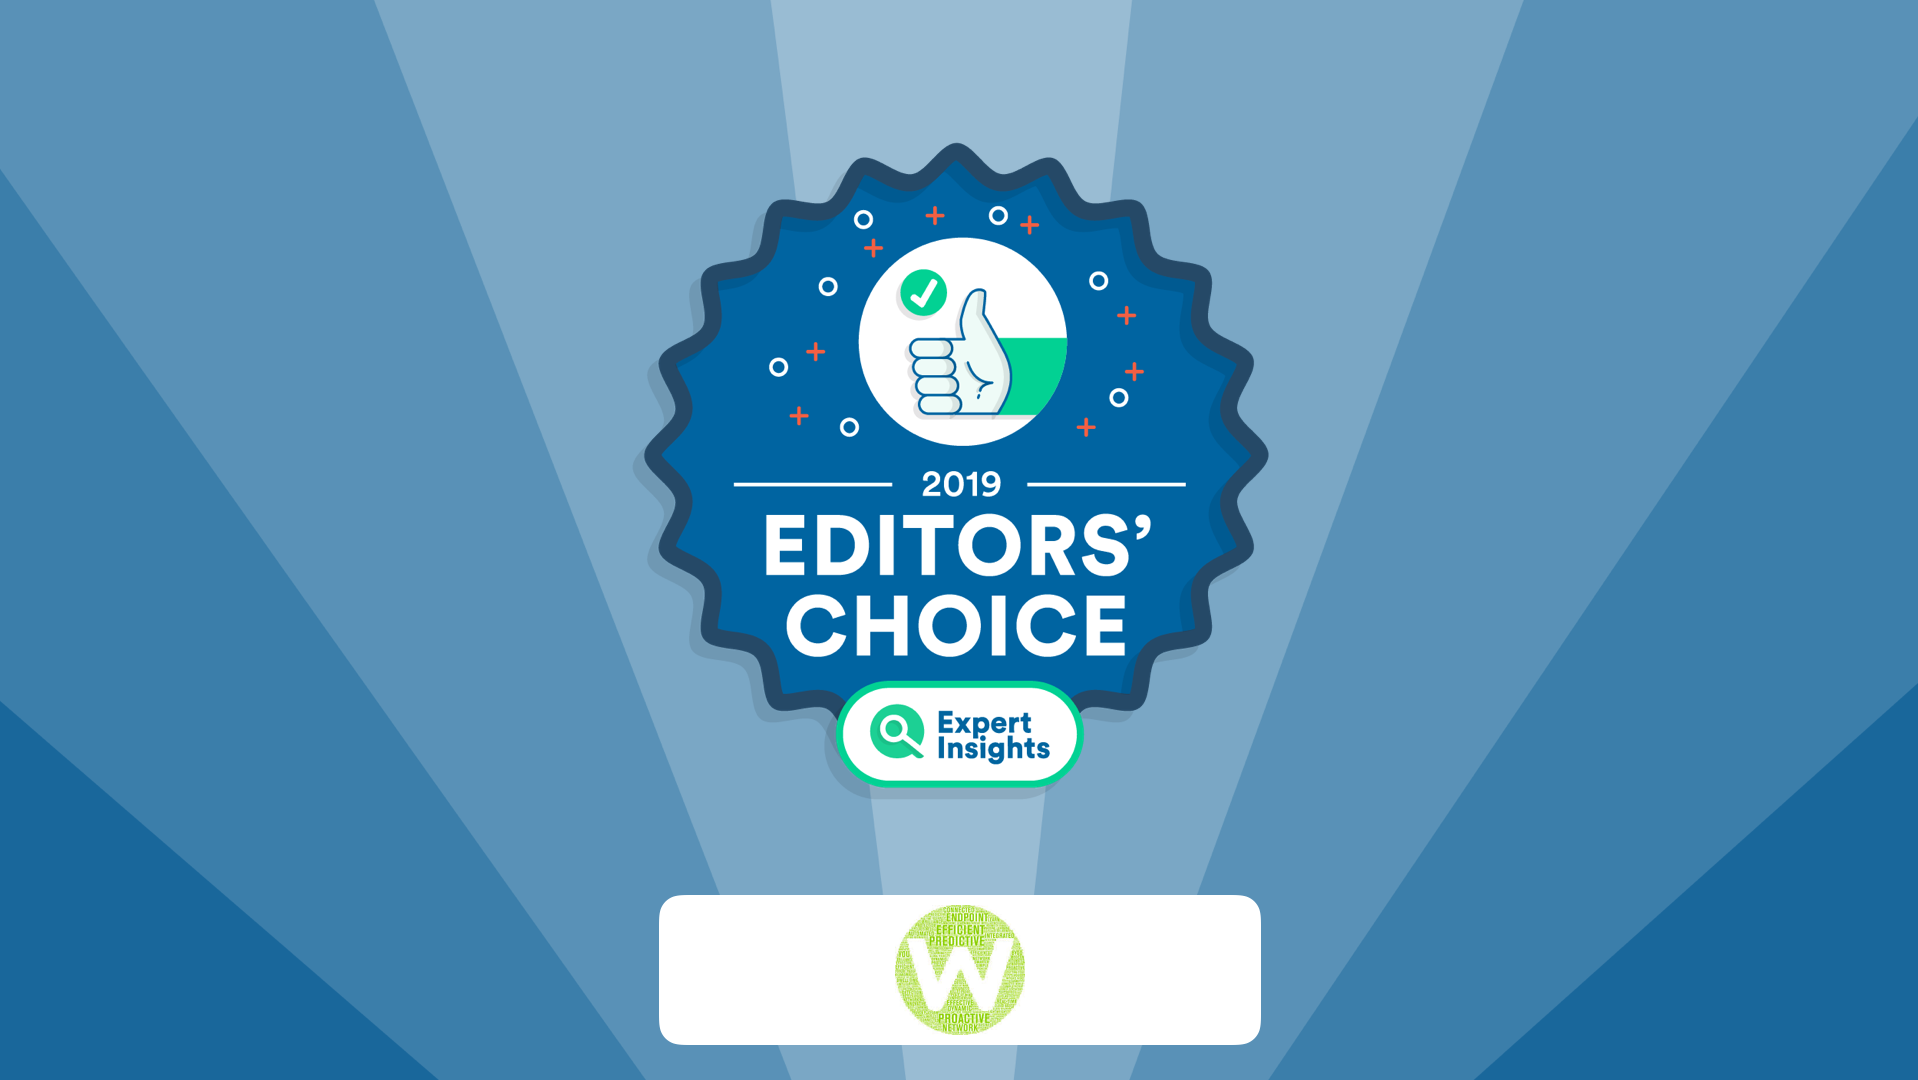 Webroot wins editors choice award